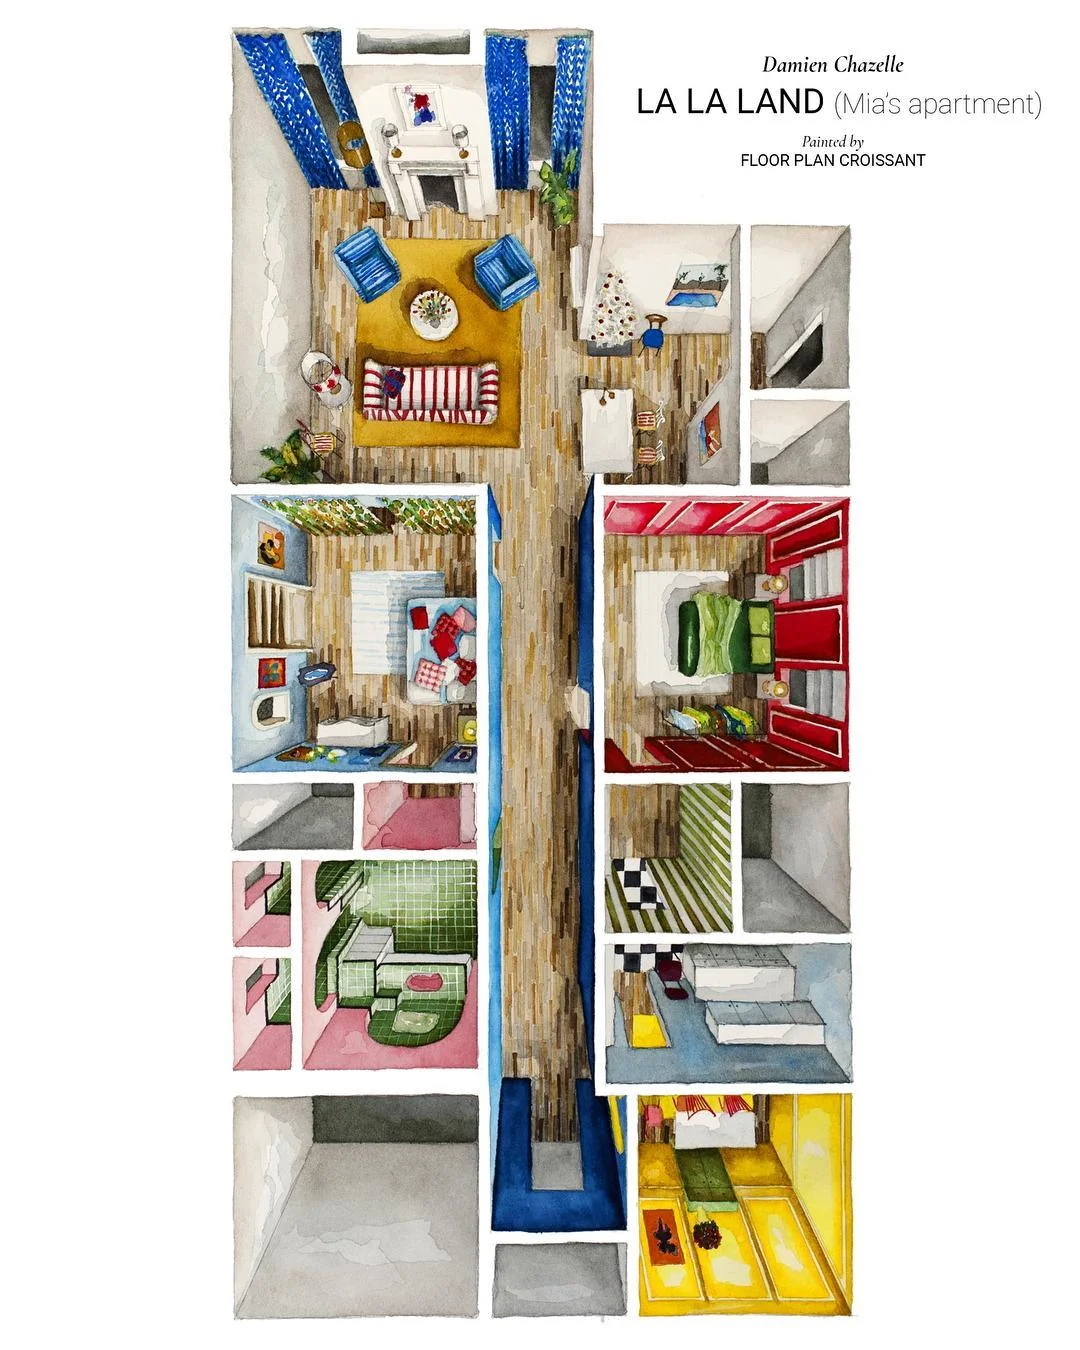 Instagram дня: как выглядит планировка домов из фильмов и сериалов - фото 5